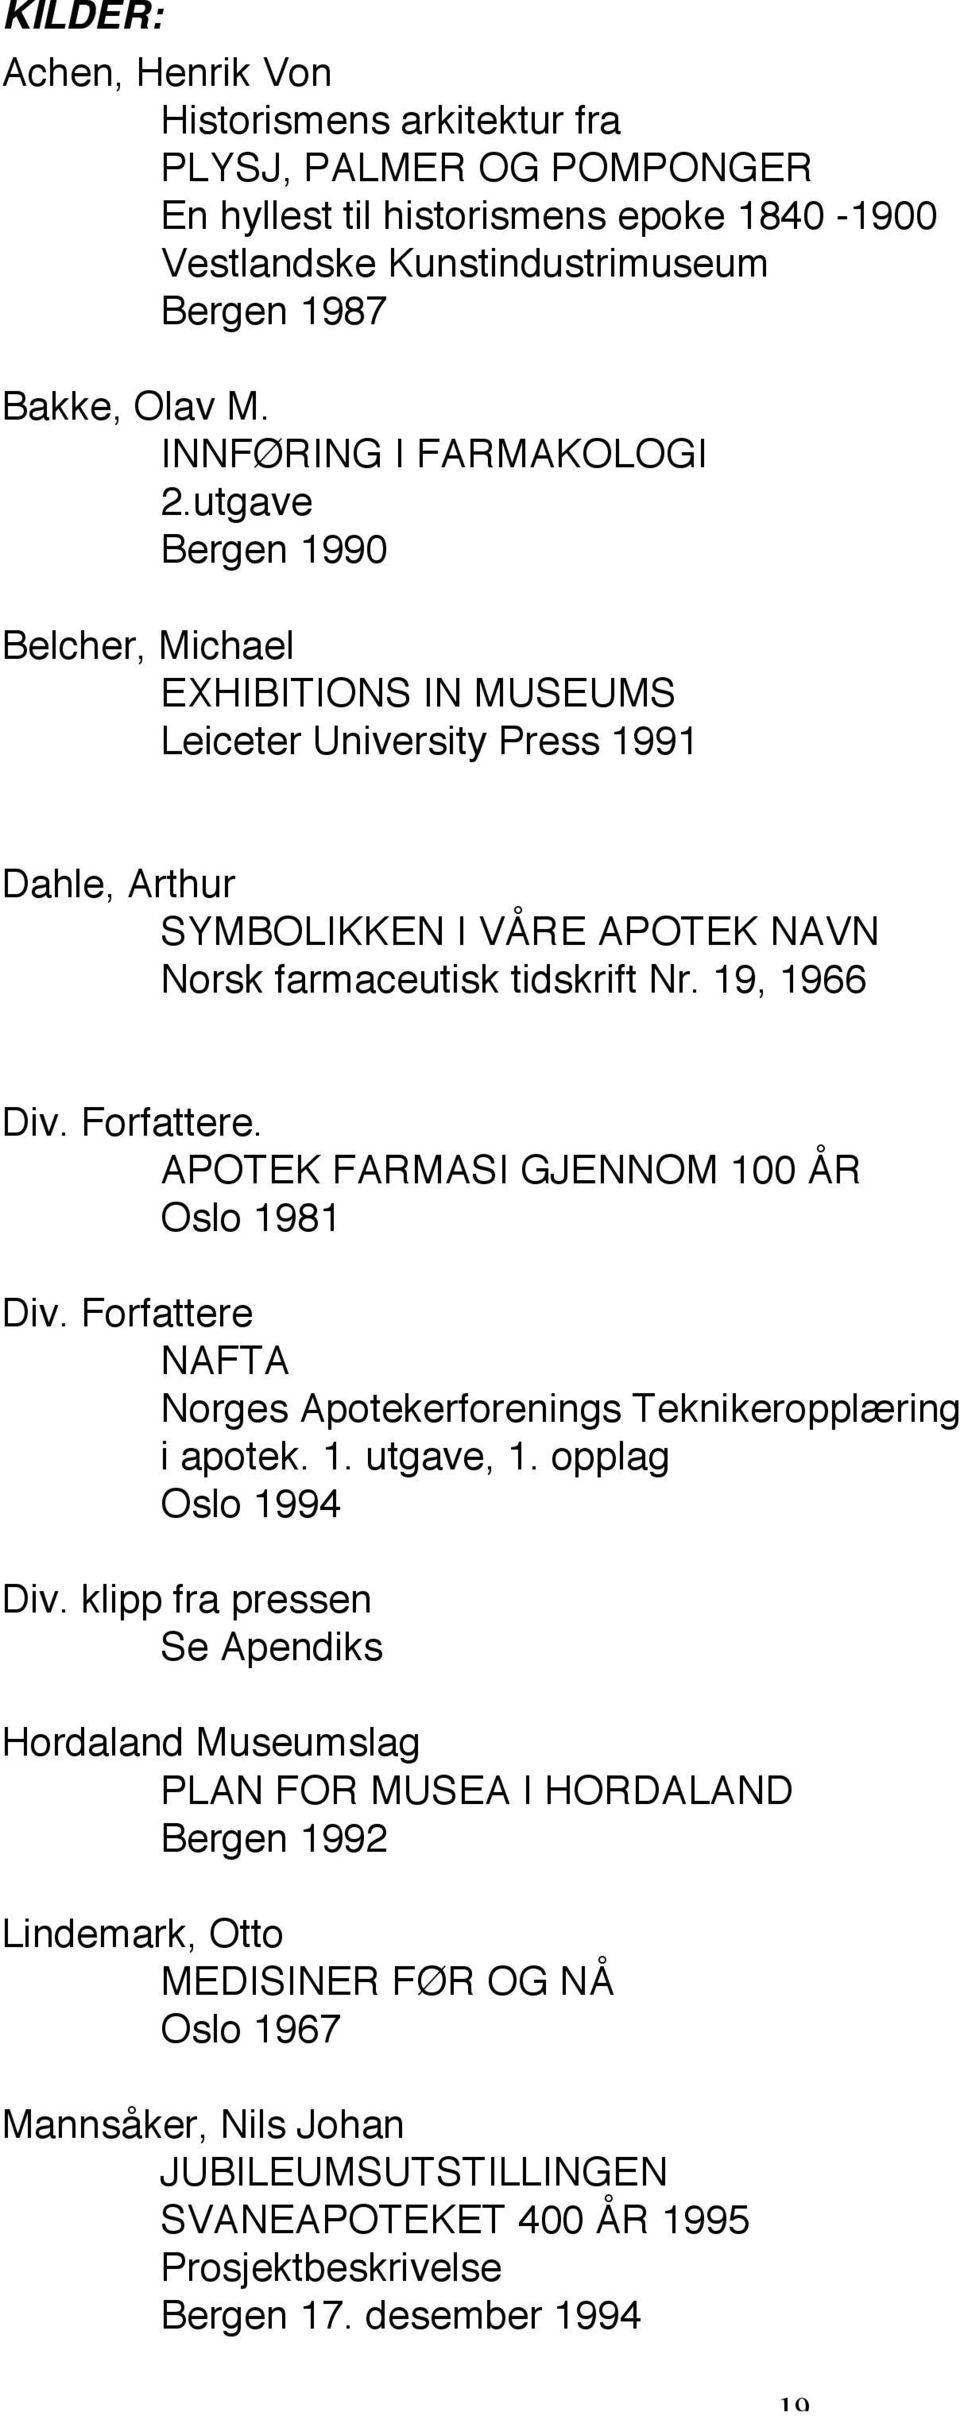 19, 1966 Div. Forfattere. APOTEK FARMASI GJENNOM 100 ÅR Oslo 1981 Div. Forfattere NAFTA Norges Apotekerforenings Teknikeropplæring i apotek. 1. utgave, 1. opplag Oslo 1994 Div.